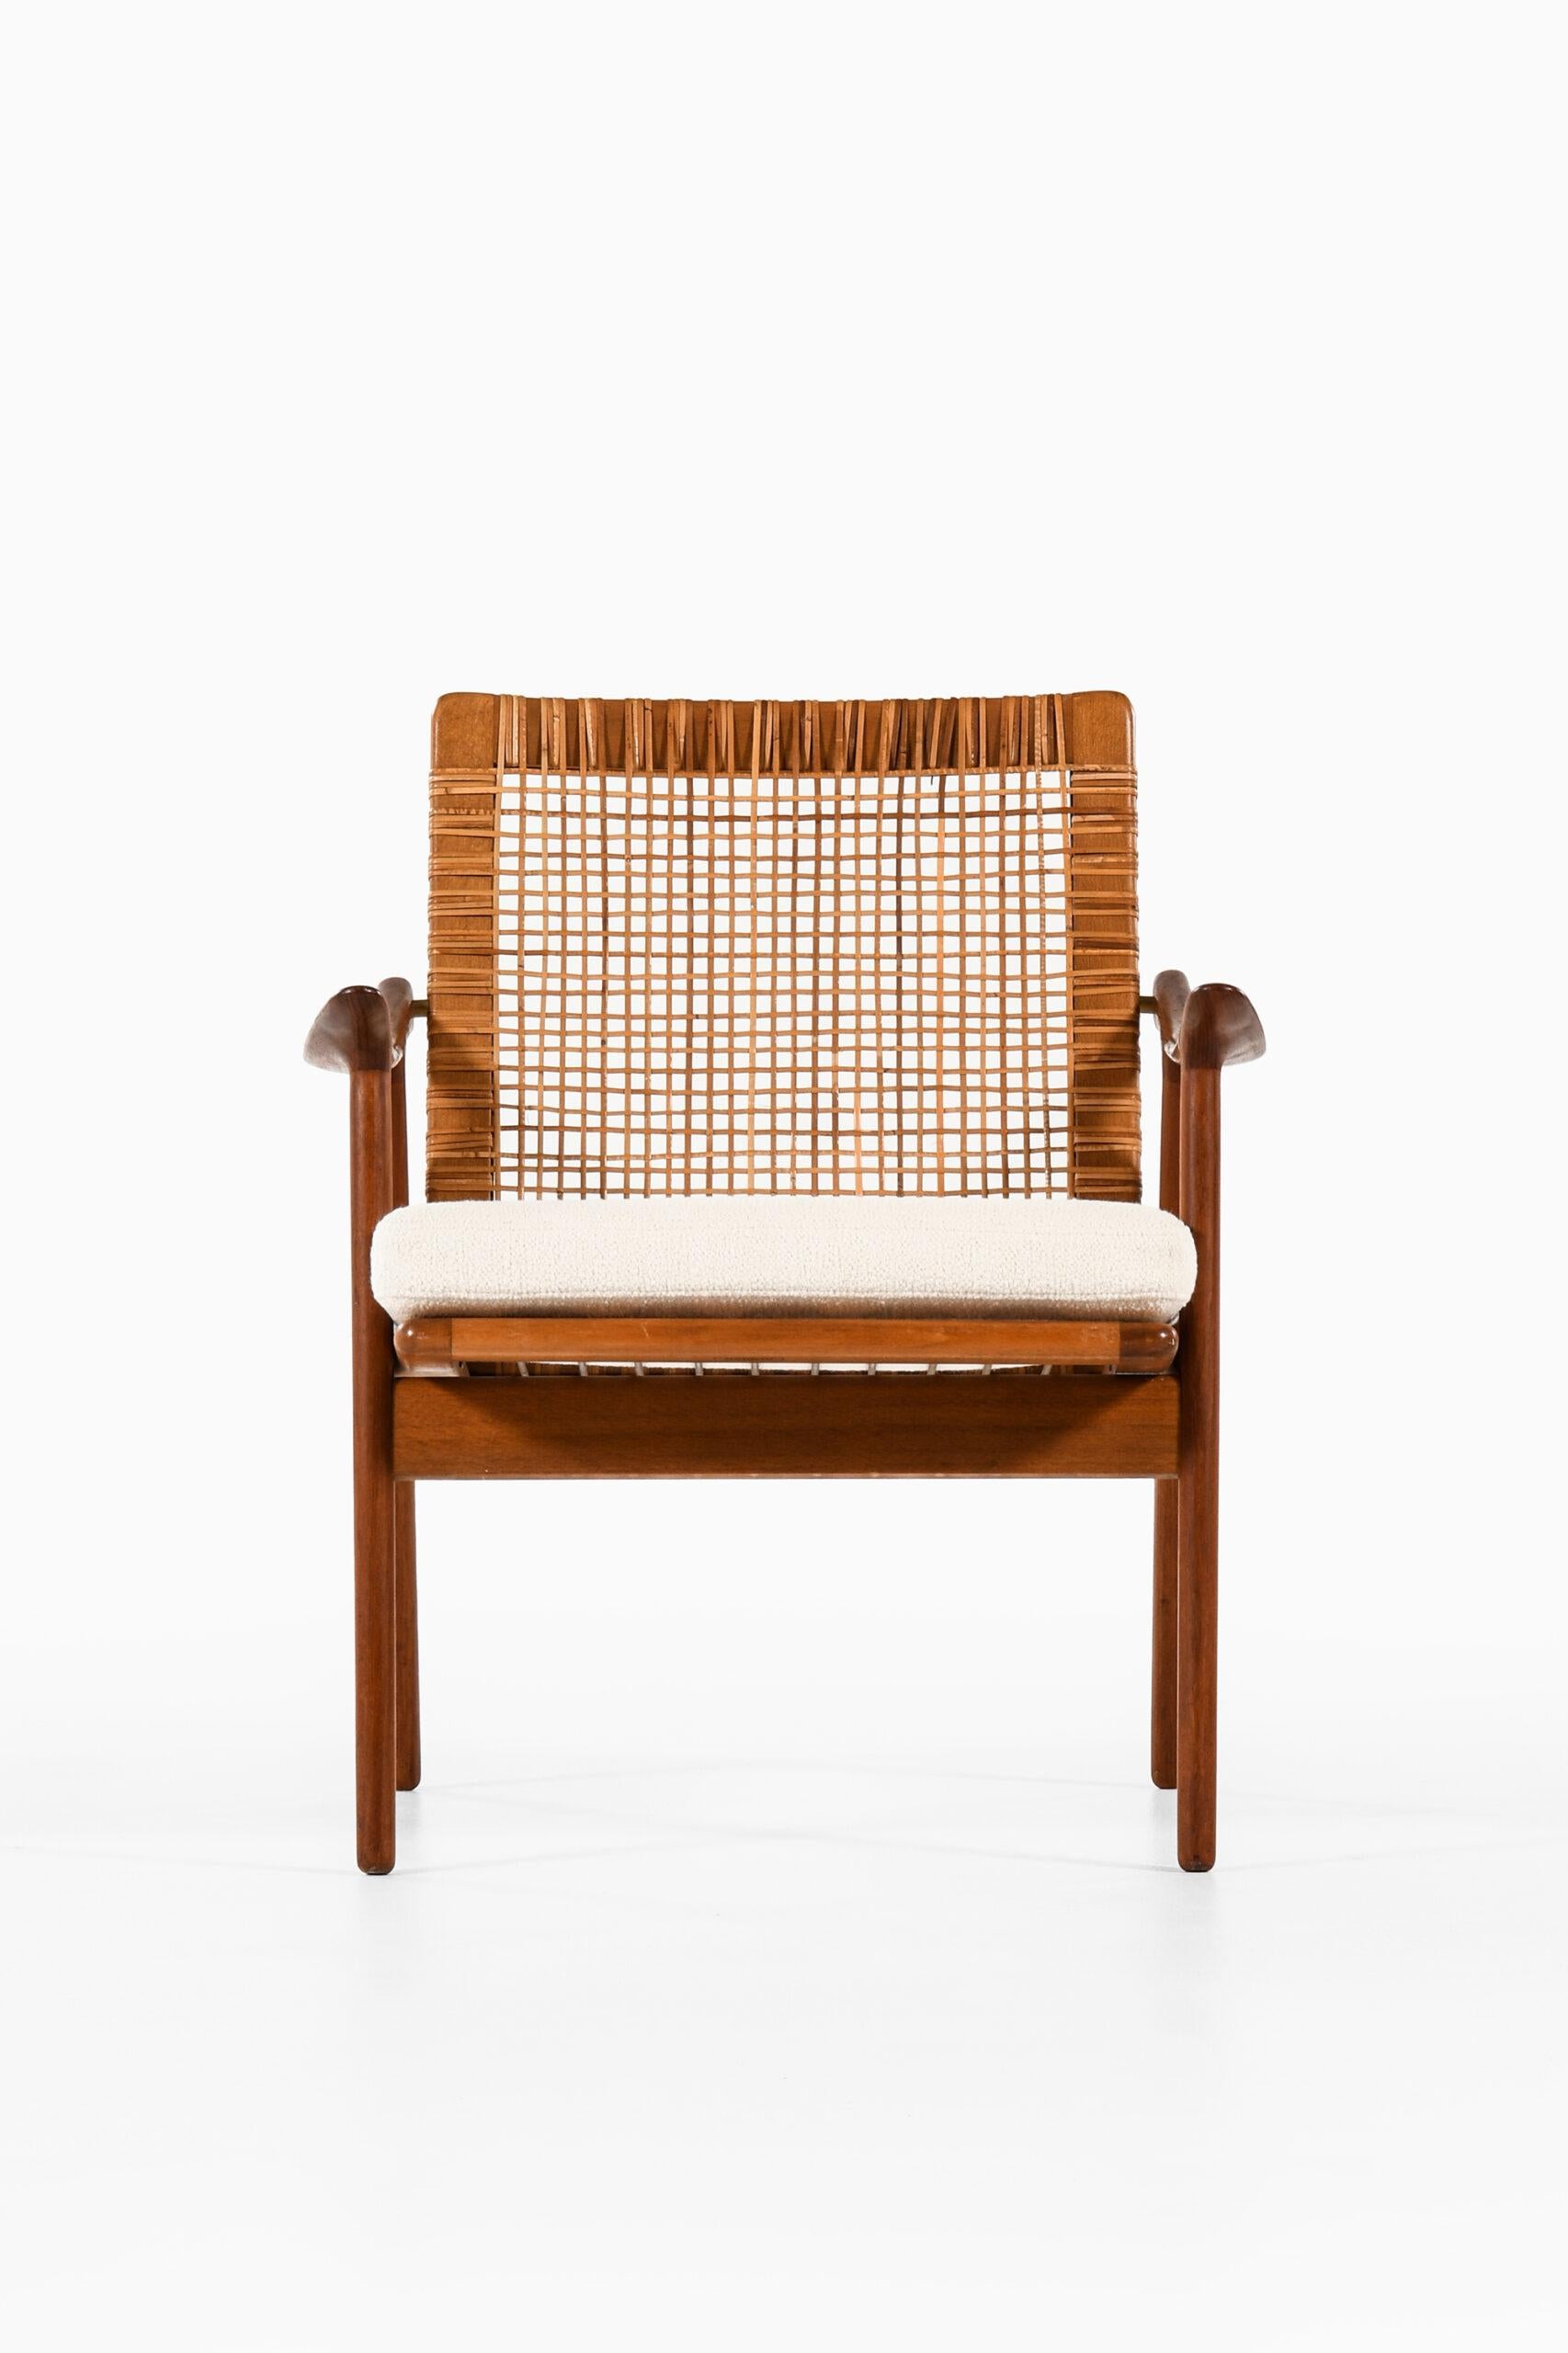 Seltener Sessel, entworfen von Fredrik Kayser. Produziert von Vatne Møbler in Norwegen.